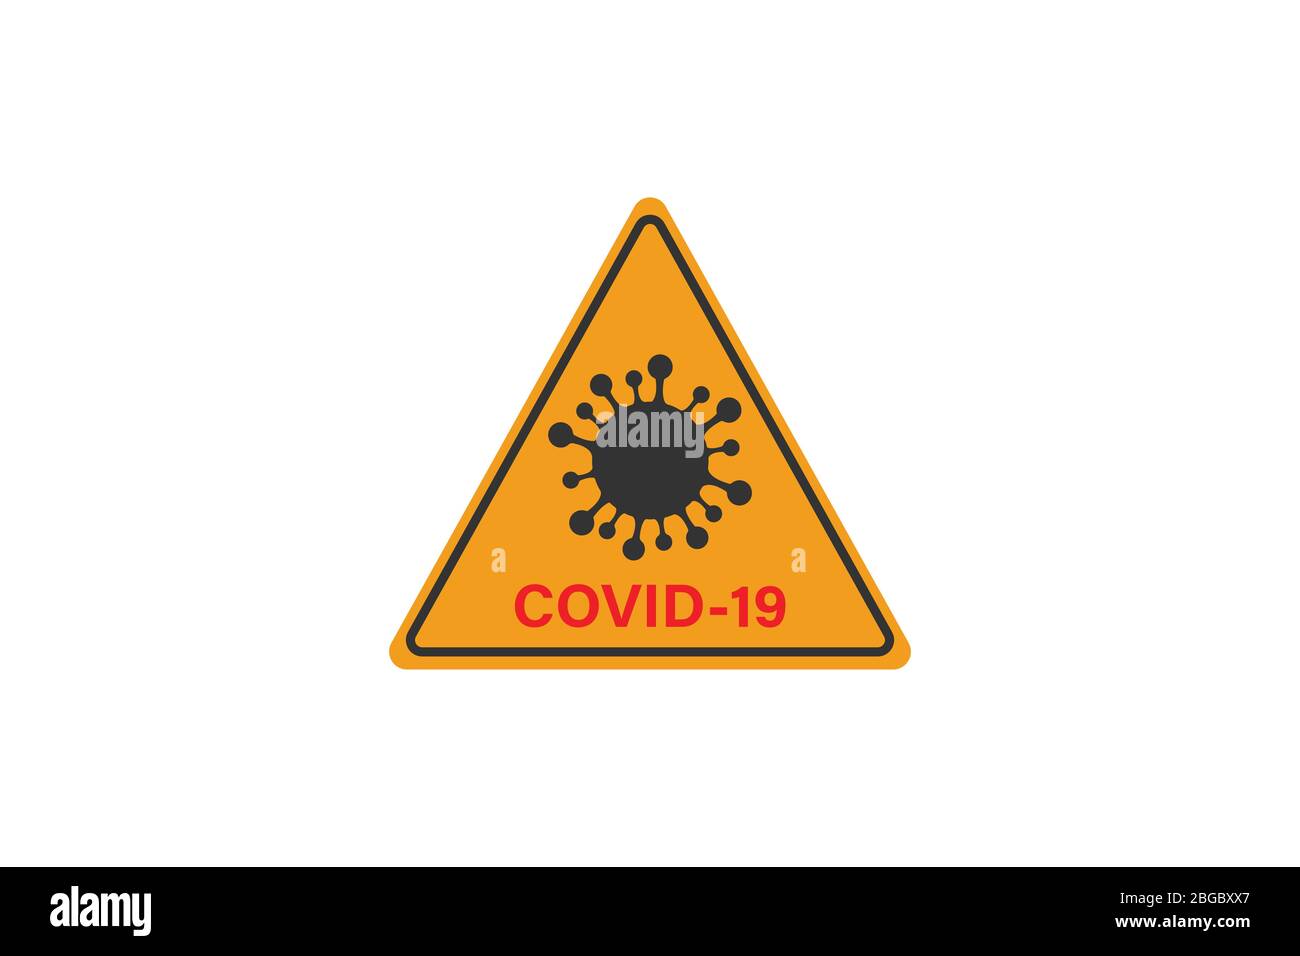 Coronavirus-Zeichen. Corona Virus Bakteria Cell Icon, 2019-nCoV in Warnhinweisen für Verkehrszeichen. Warnsymbol von COVID-19, neuartiges Coronavirus. Vektorsymbol. Stock Vektor